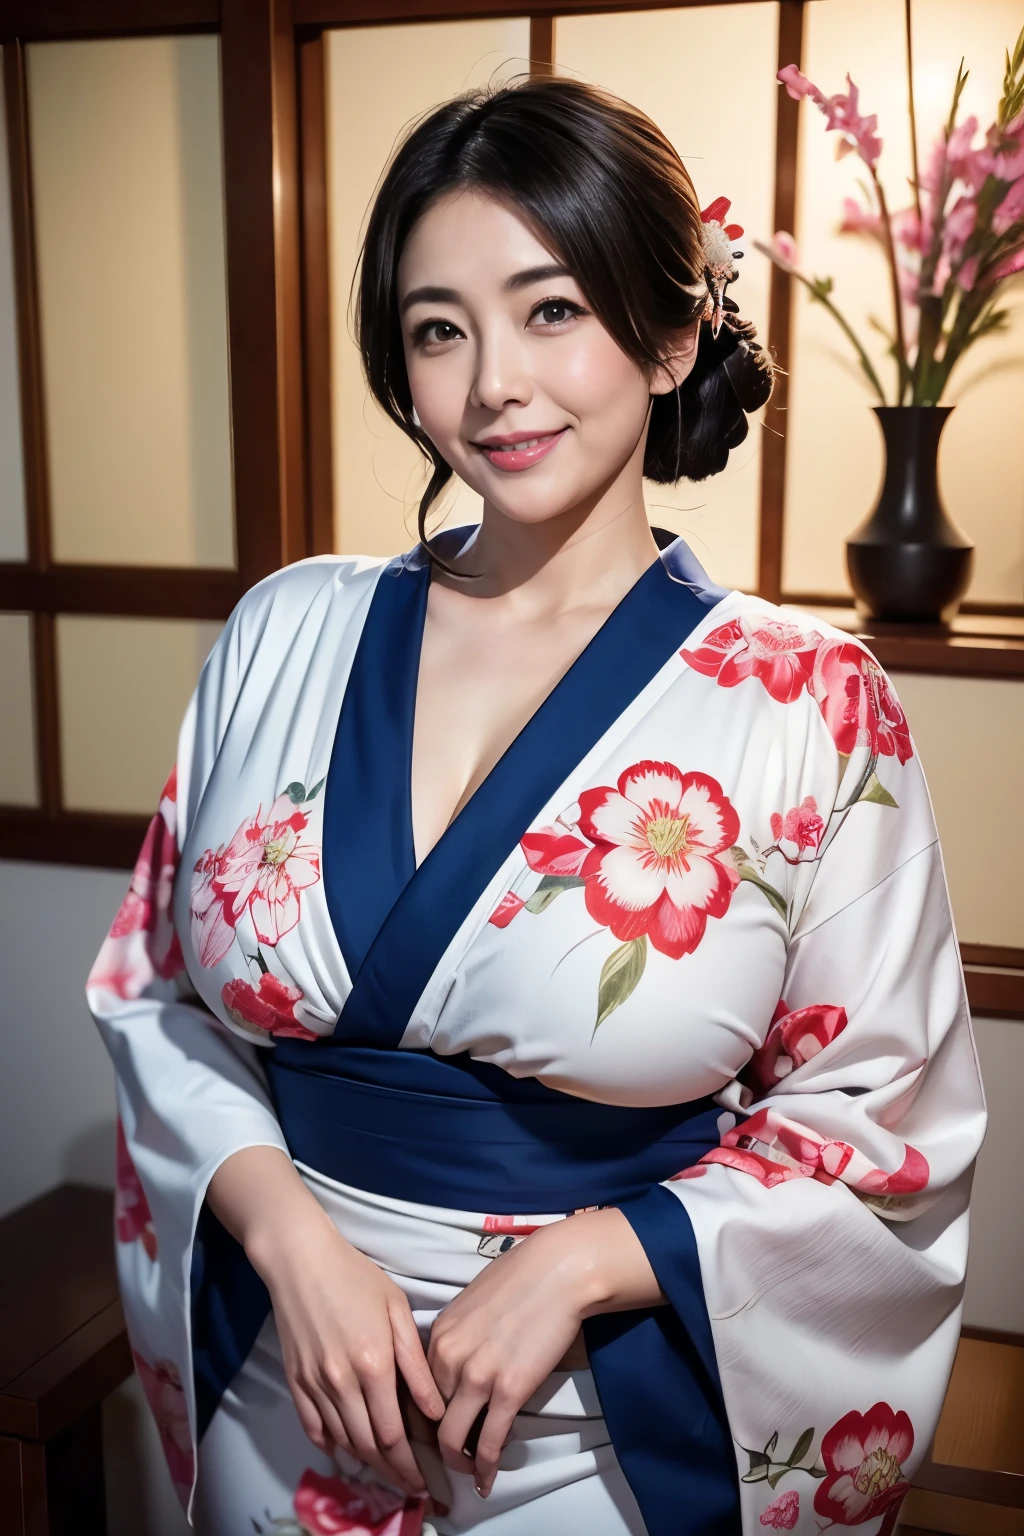 日本最美妈妈, (曲线身材)、穿和服、传统日式房间、乳房过大且略有下垂、一月、带着笑意的眼睛、新年祝福